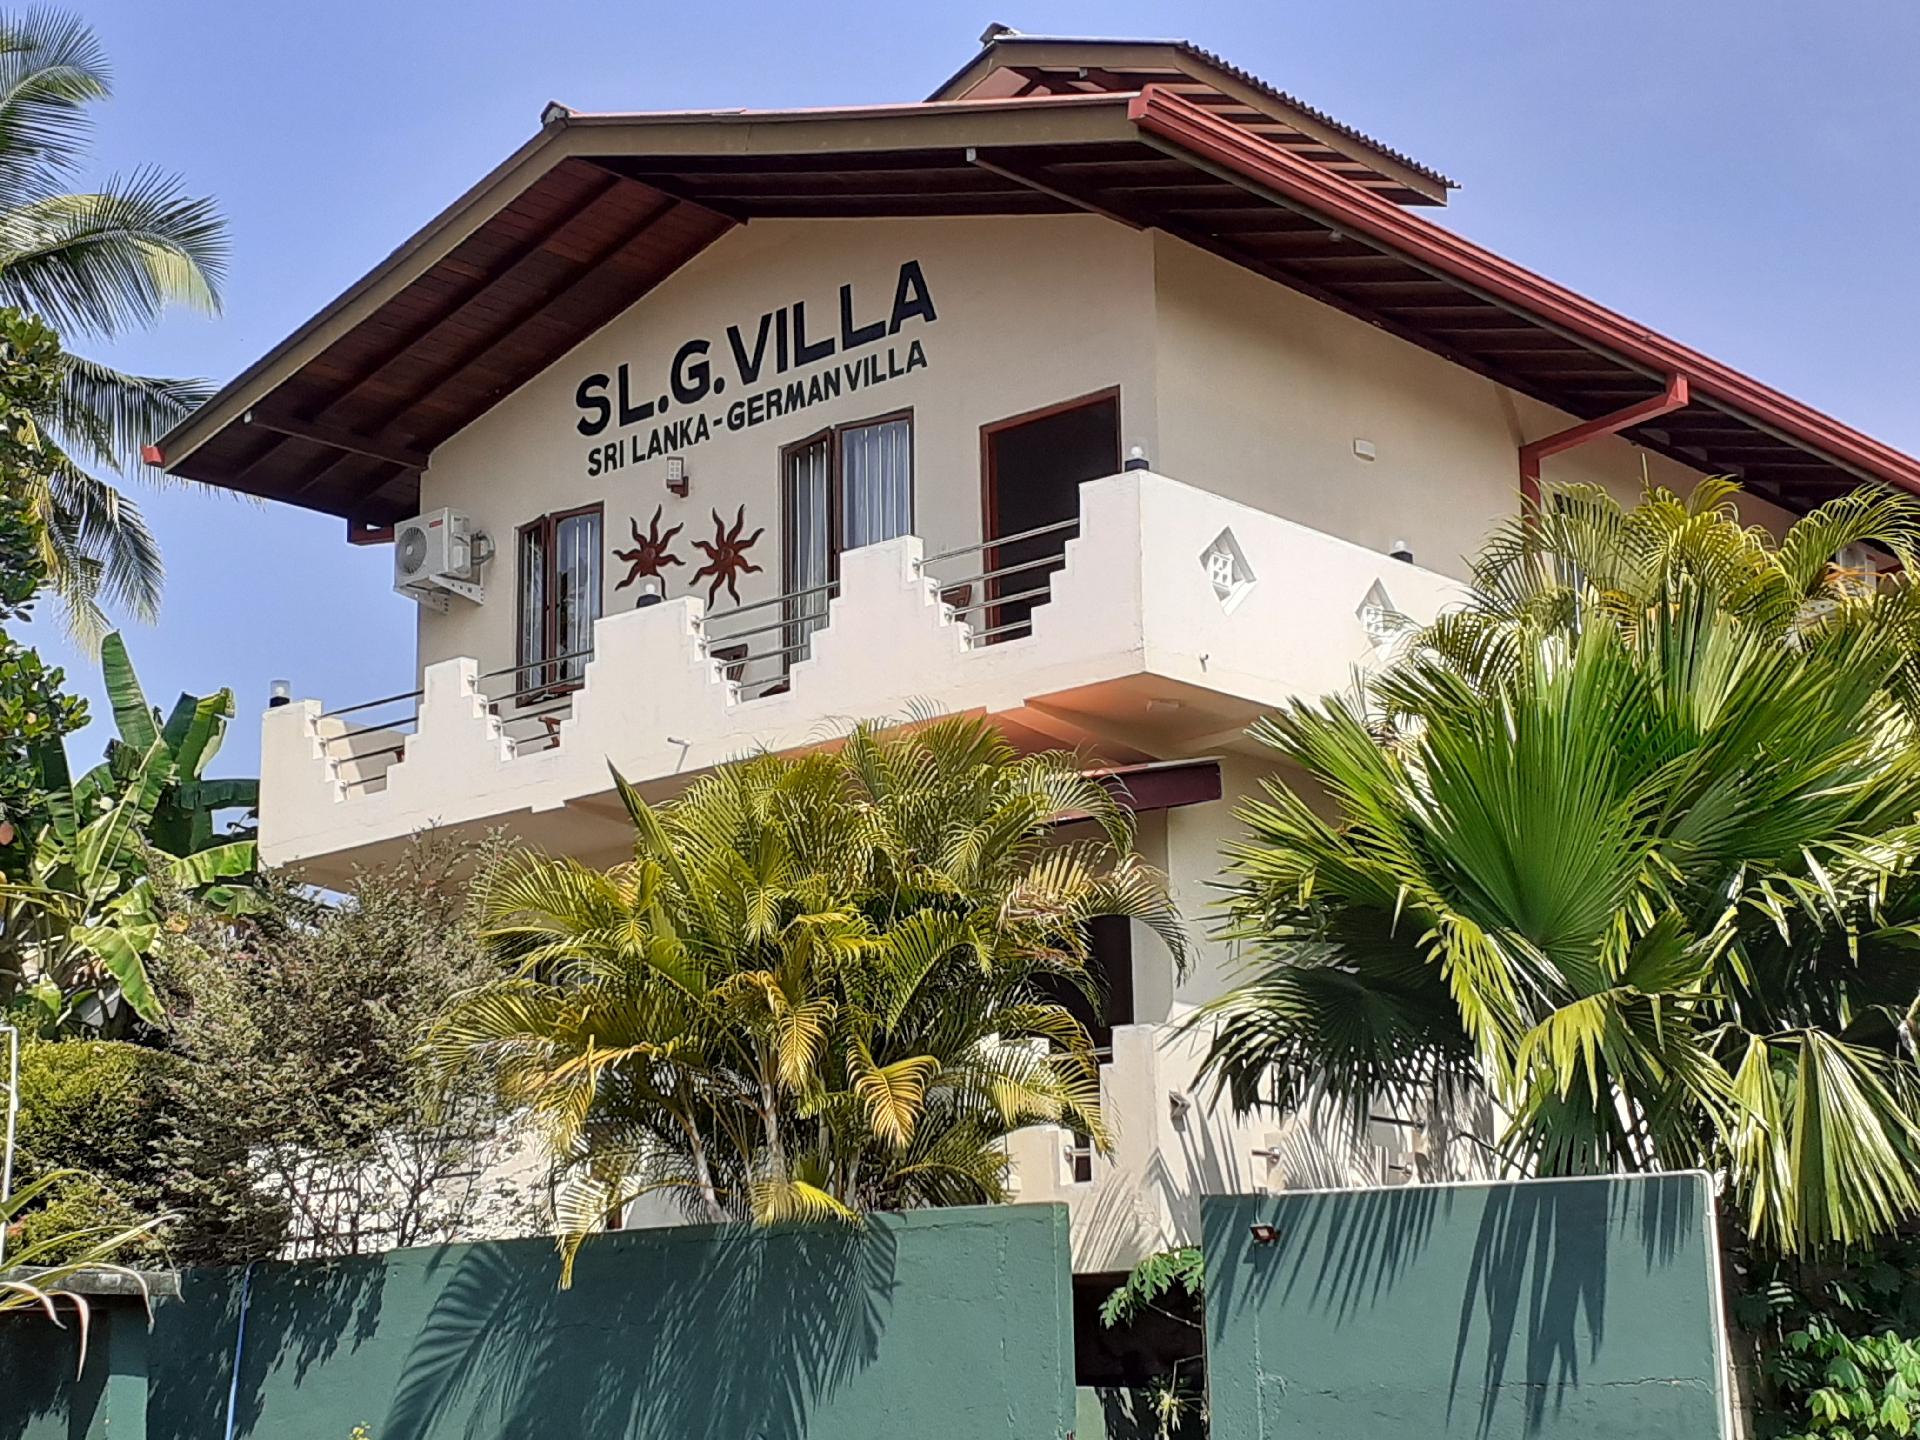 Sri Lanka- German Villa Hikkaduwa Wohnung 1  in Asien und Naher Osten